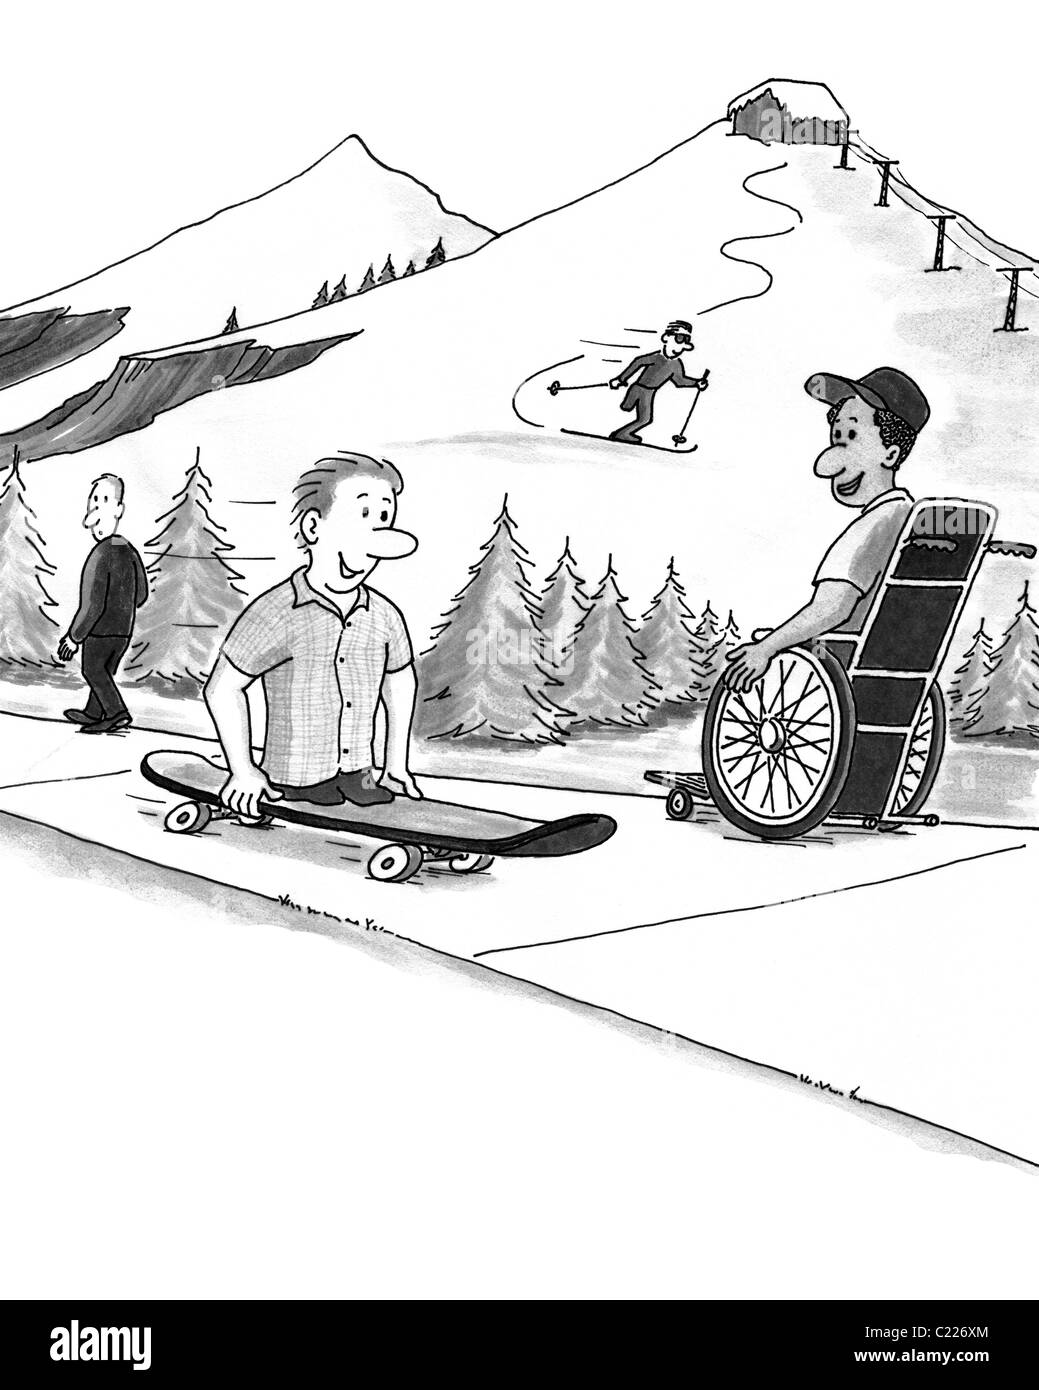 Vier Personen in einem Skigebiet in den verschiedenen Zuständen von Fähigkeiten und Behinderungen Aktivitäten genießen. Manche Menschen sehen einige als Behinderte, die Ausübung von Sport Stockfoto